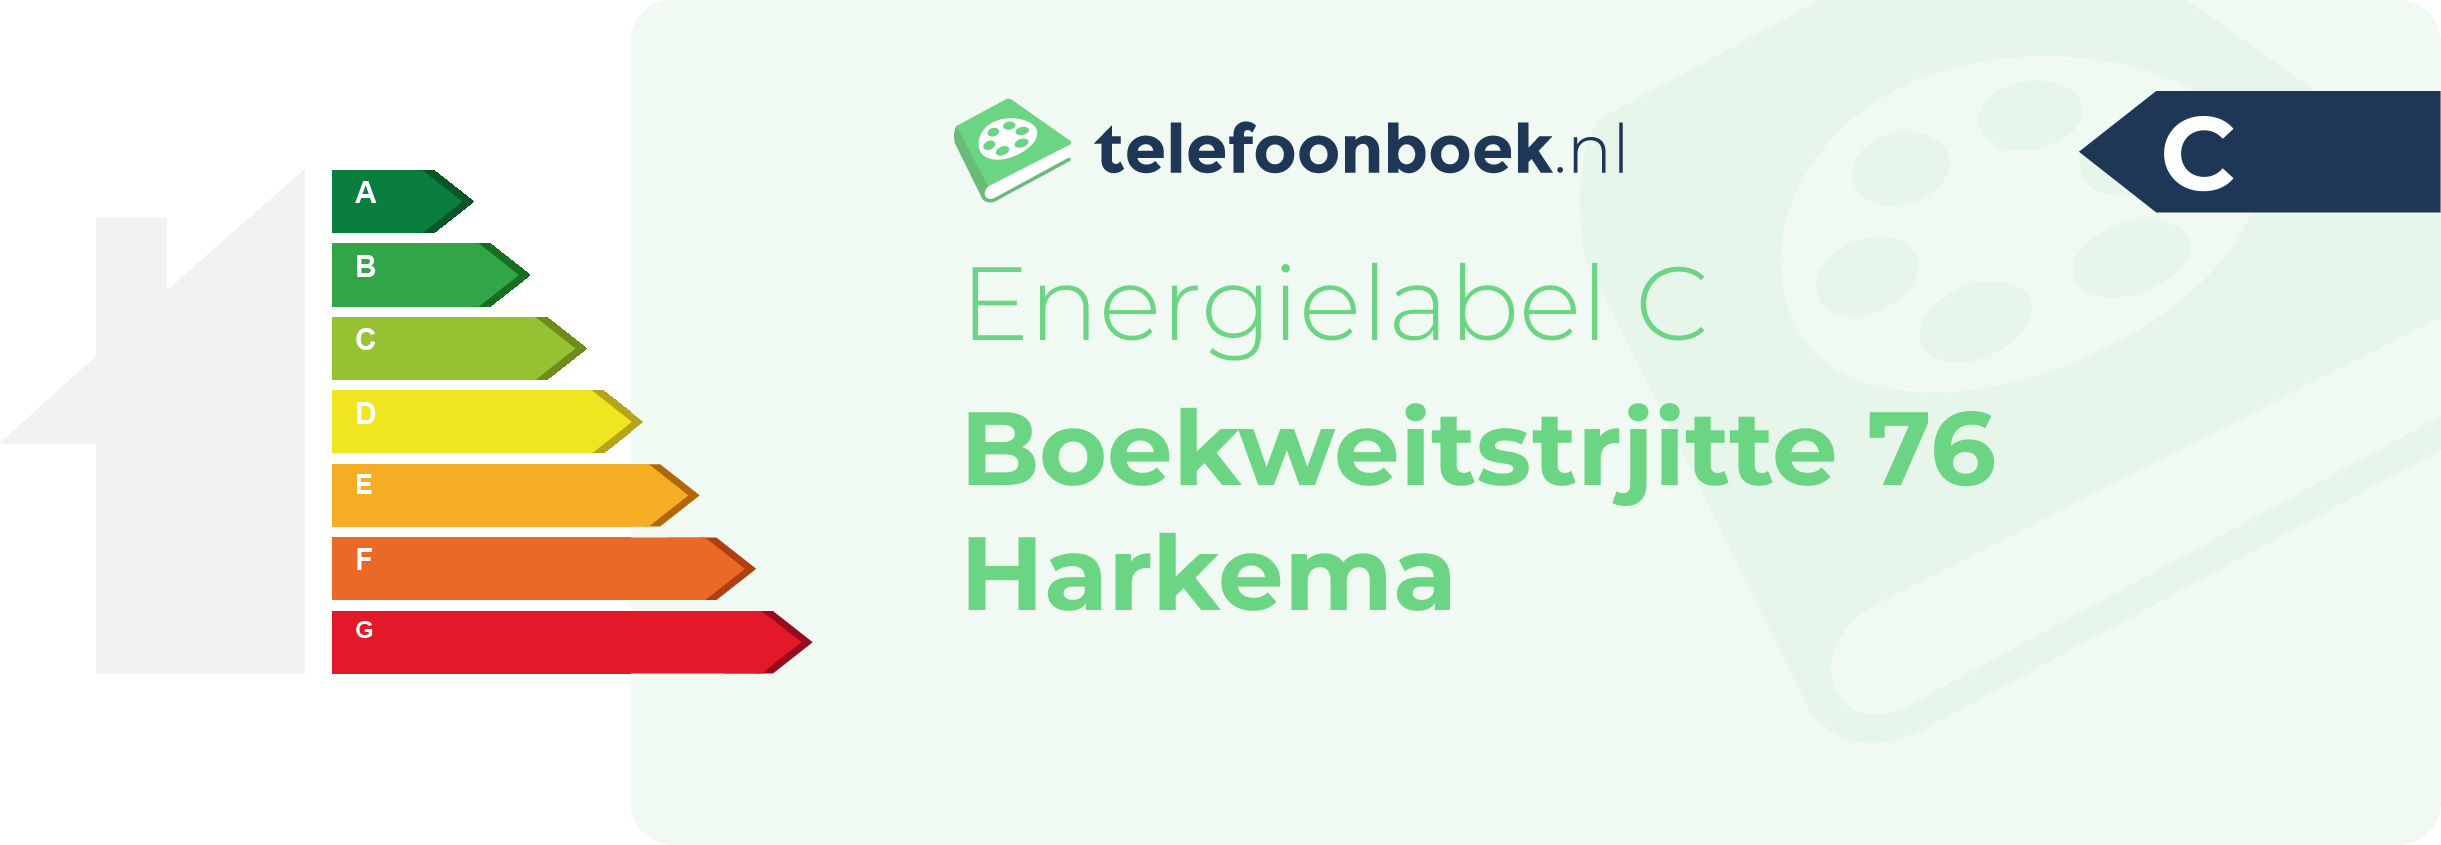 Energielabel Boekweitstrjitte 76 Harkema